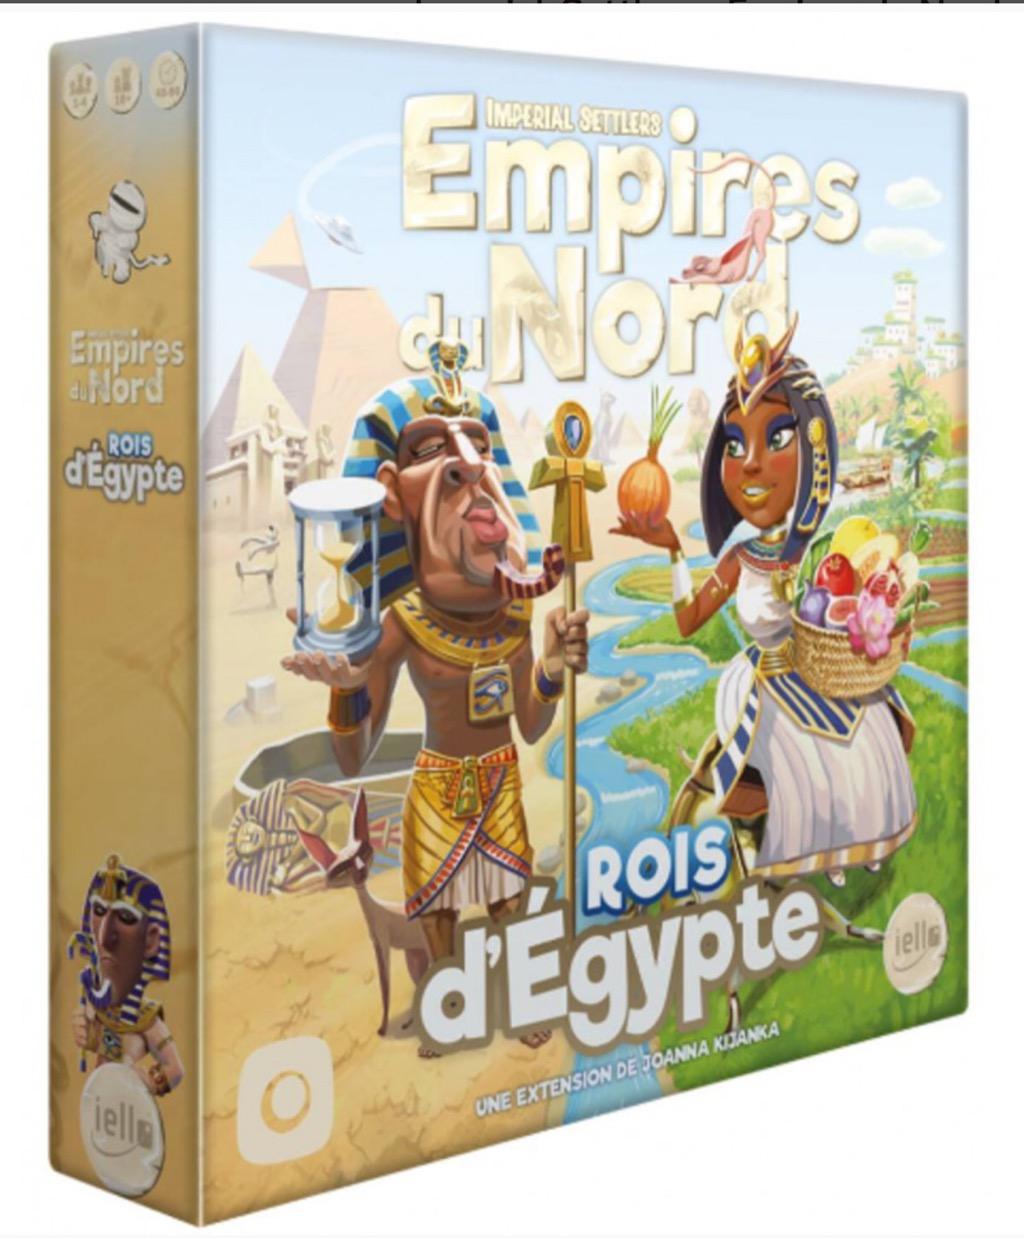 Imperial Settlers : Empires Du Nord - Rois D'egypte